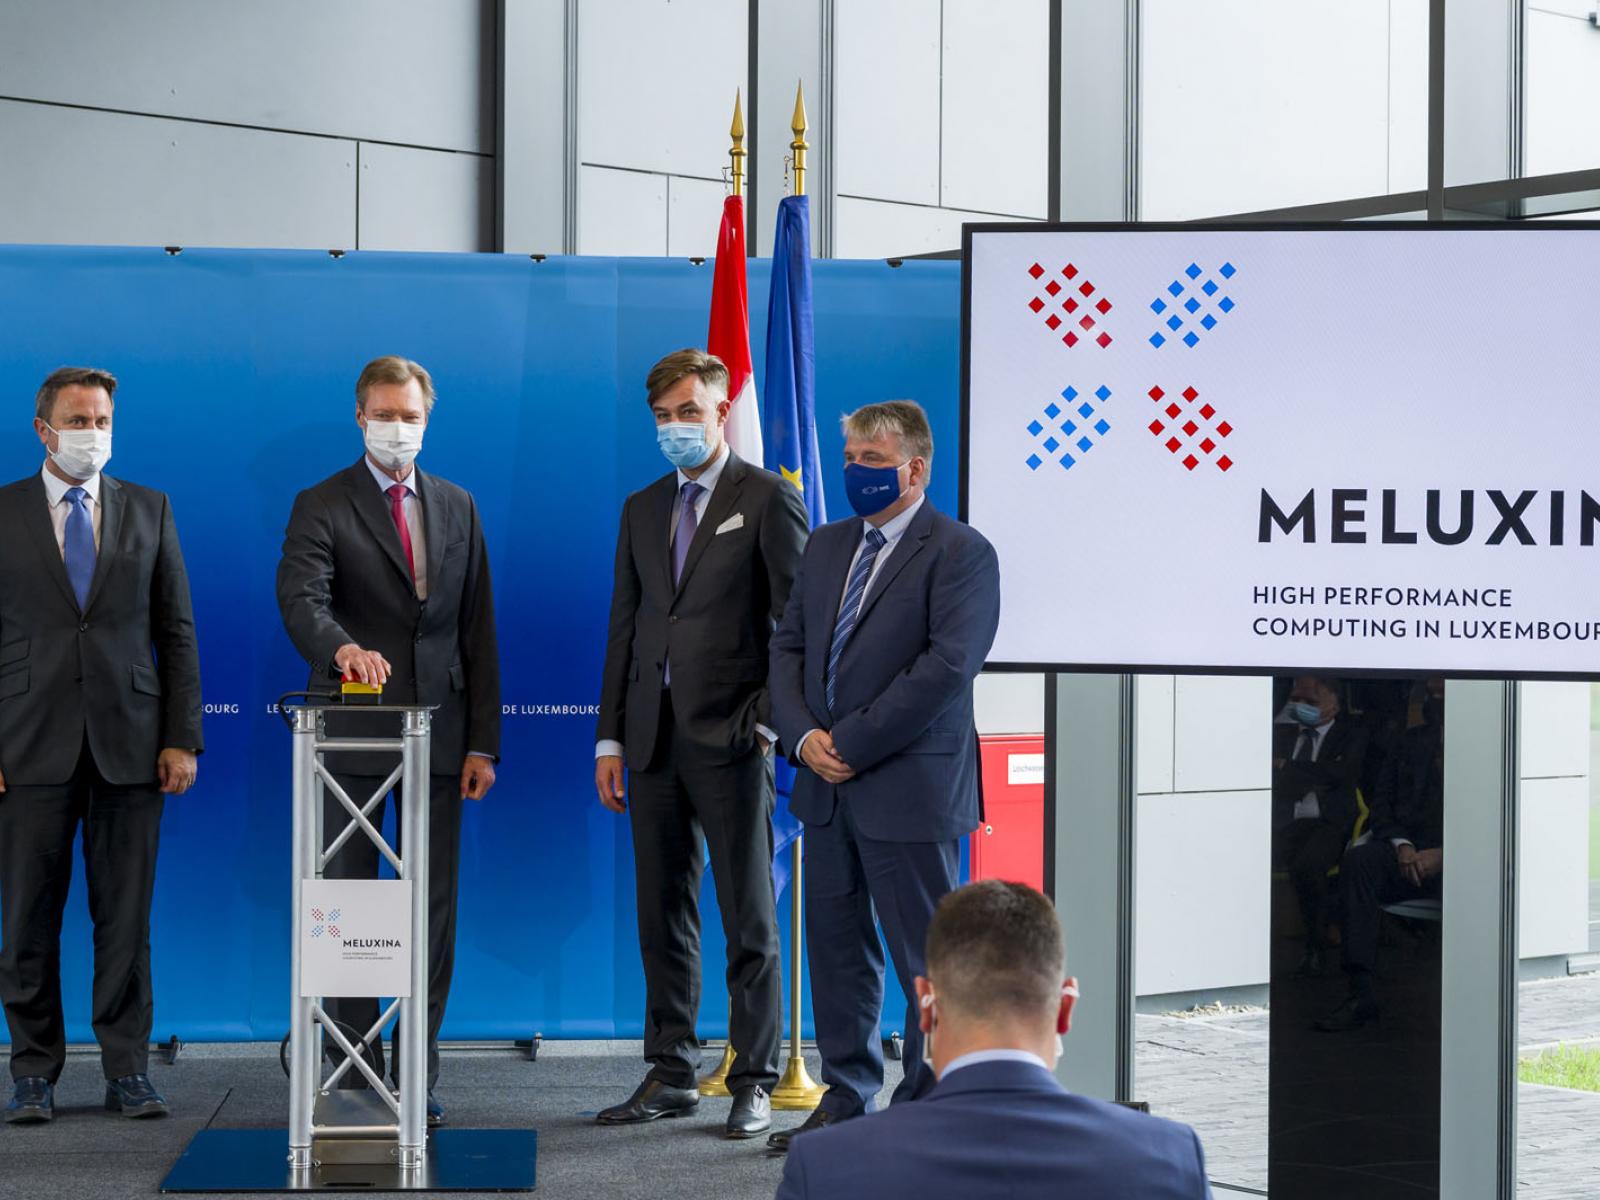 Le Grand-Duc inaugure officiellement le superordinateur MeluXina